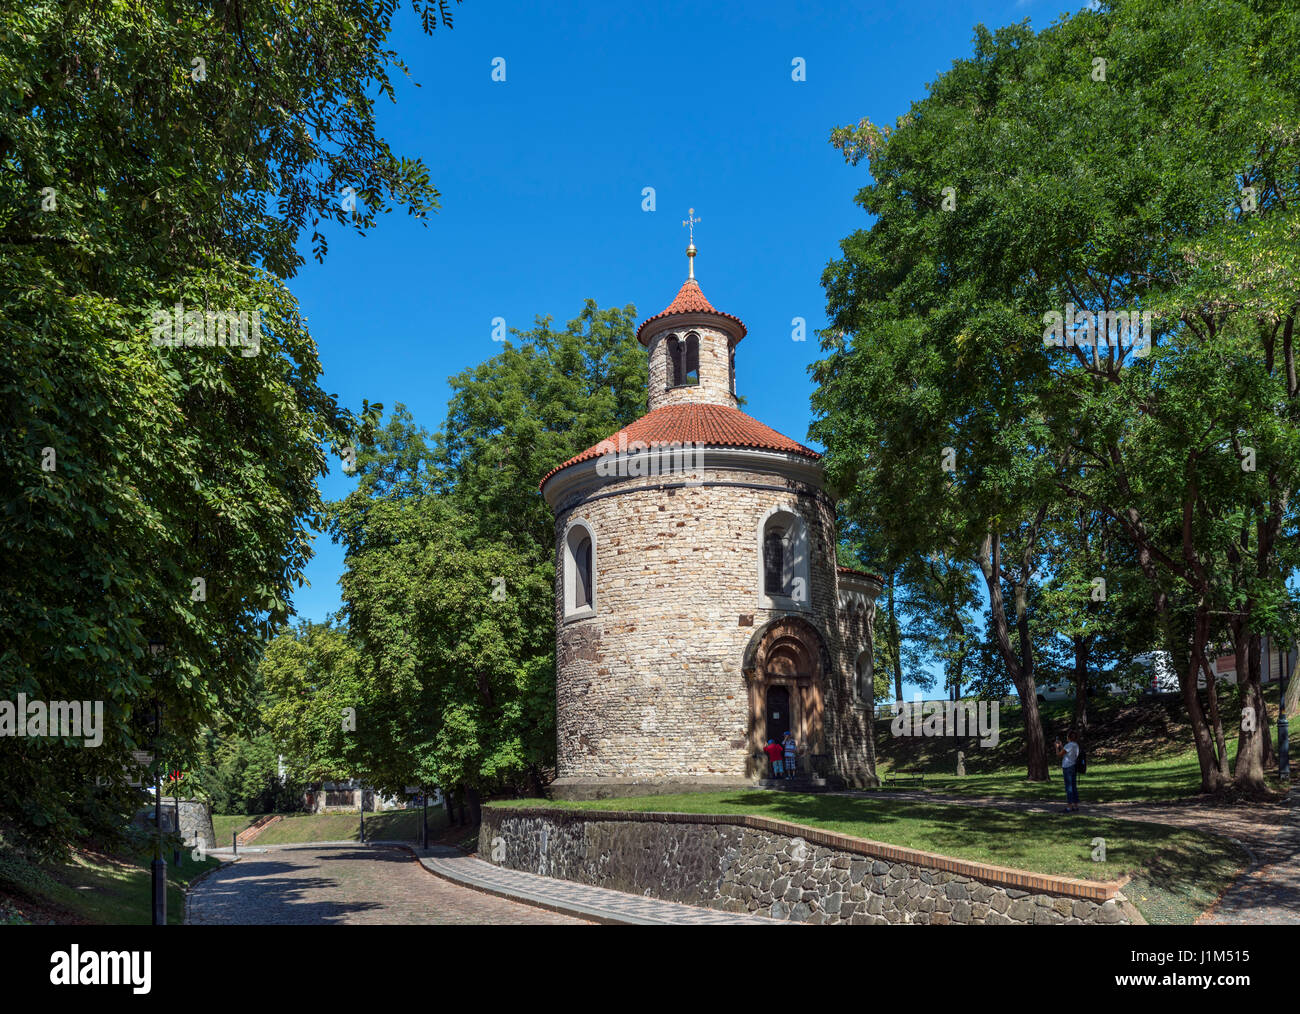 El siglo XI de la Rotonda de San Martín, considerada como edificio sobreviviente más antigua de Praga, el Vysehrad Citadel, Praga, República Checa Foto de stock